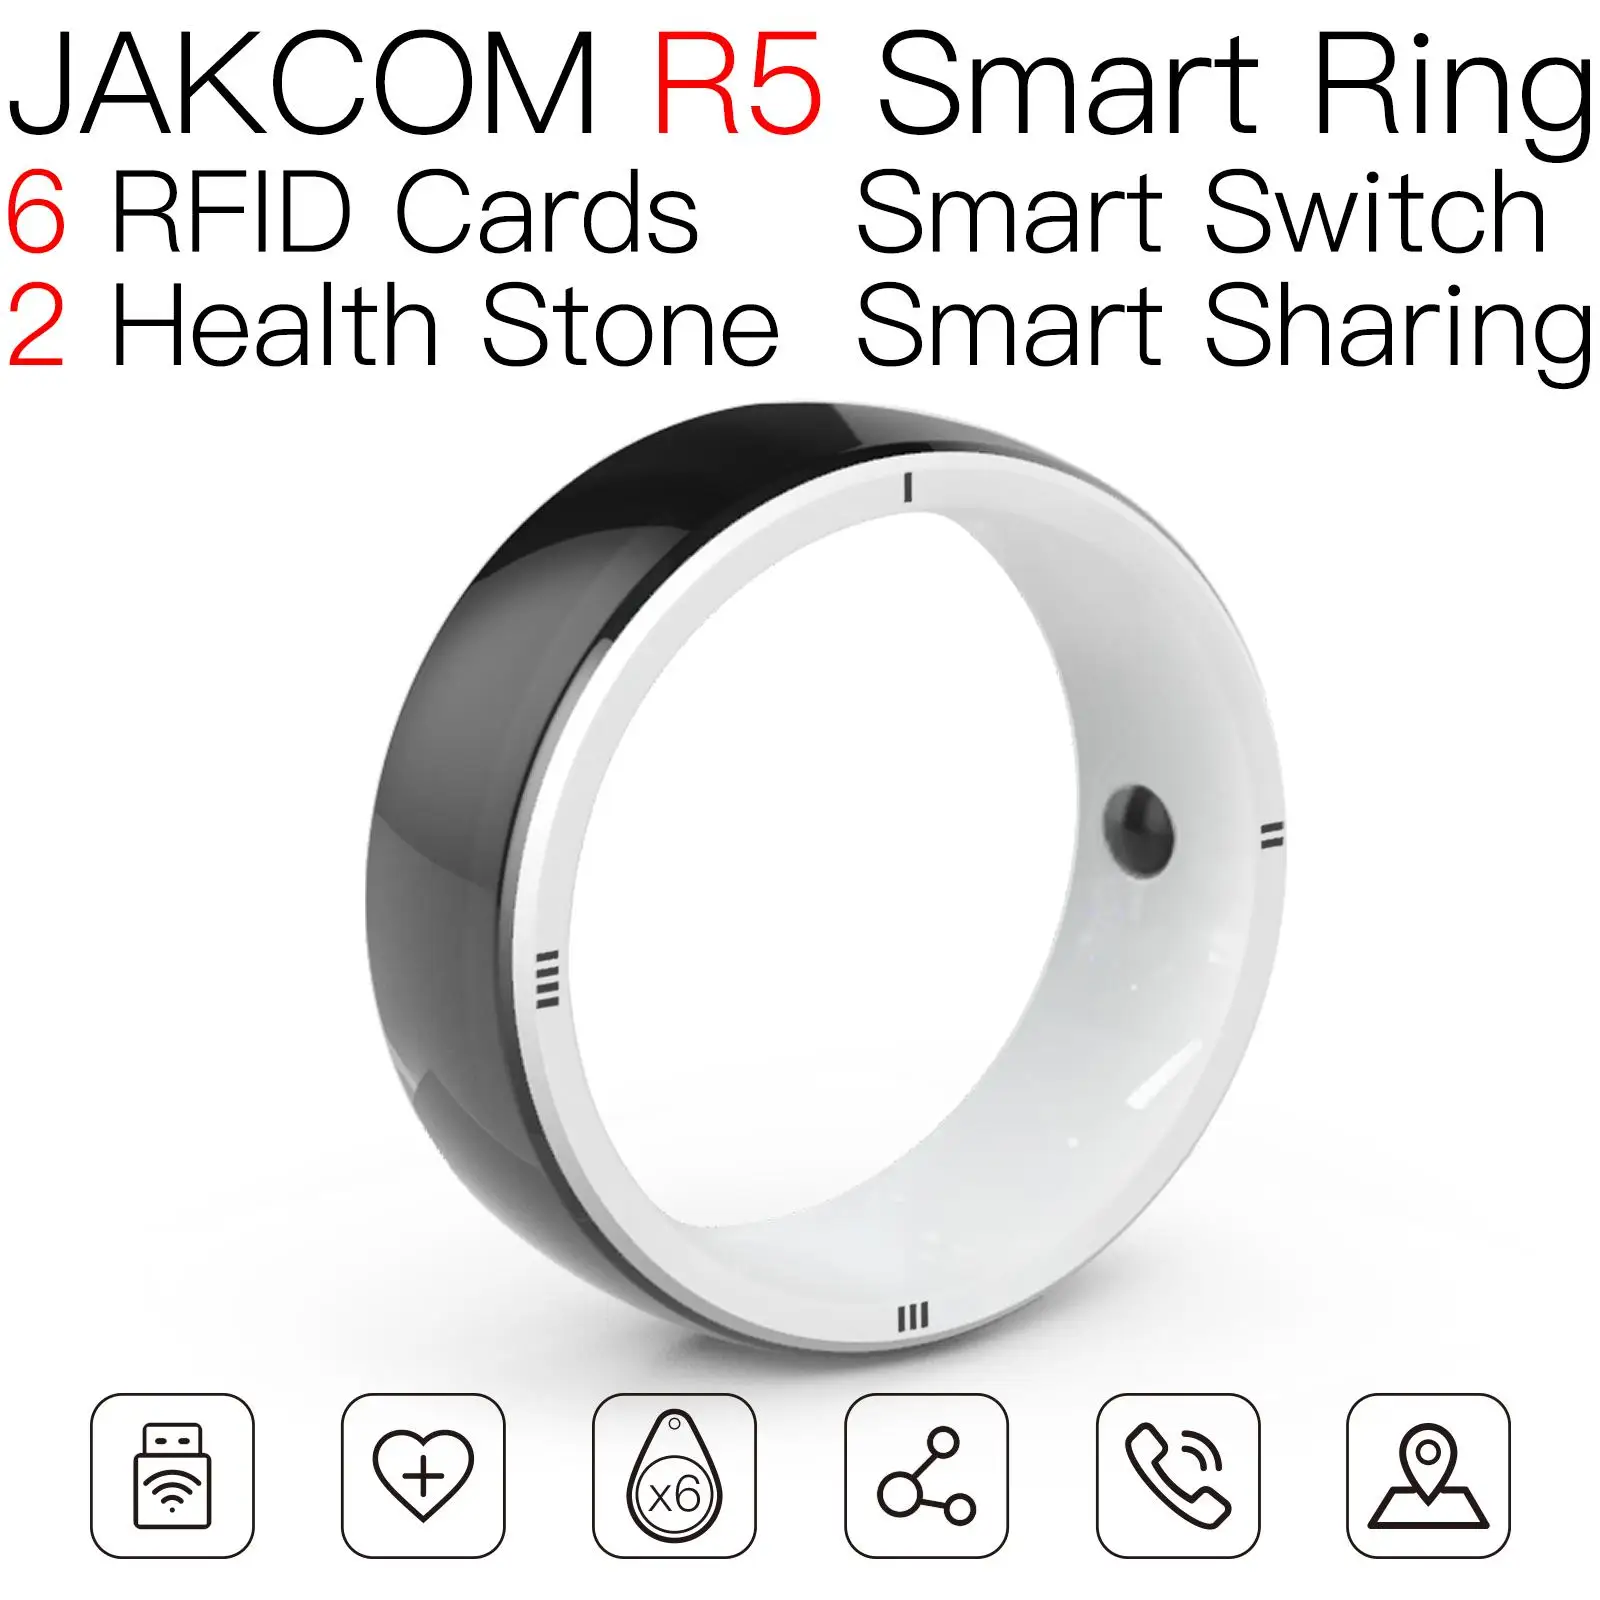 

Новое умное кольцо Jakcom R5 для мобильных телефонов IDx2,ICx2,NFCx2, IOS Android WP, умное переносное устройство, многофункциональное волшебное кольцо